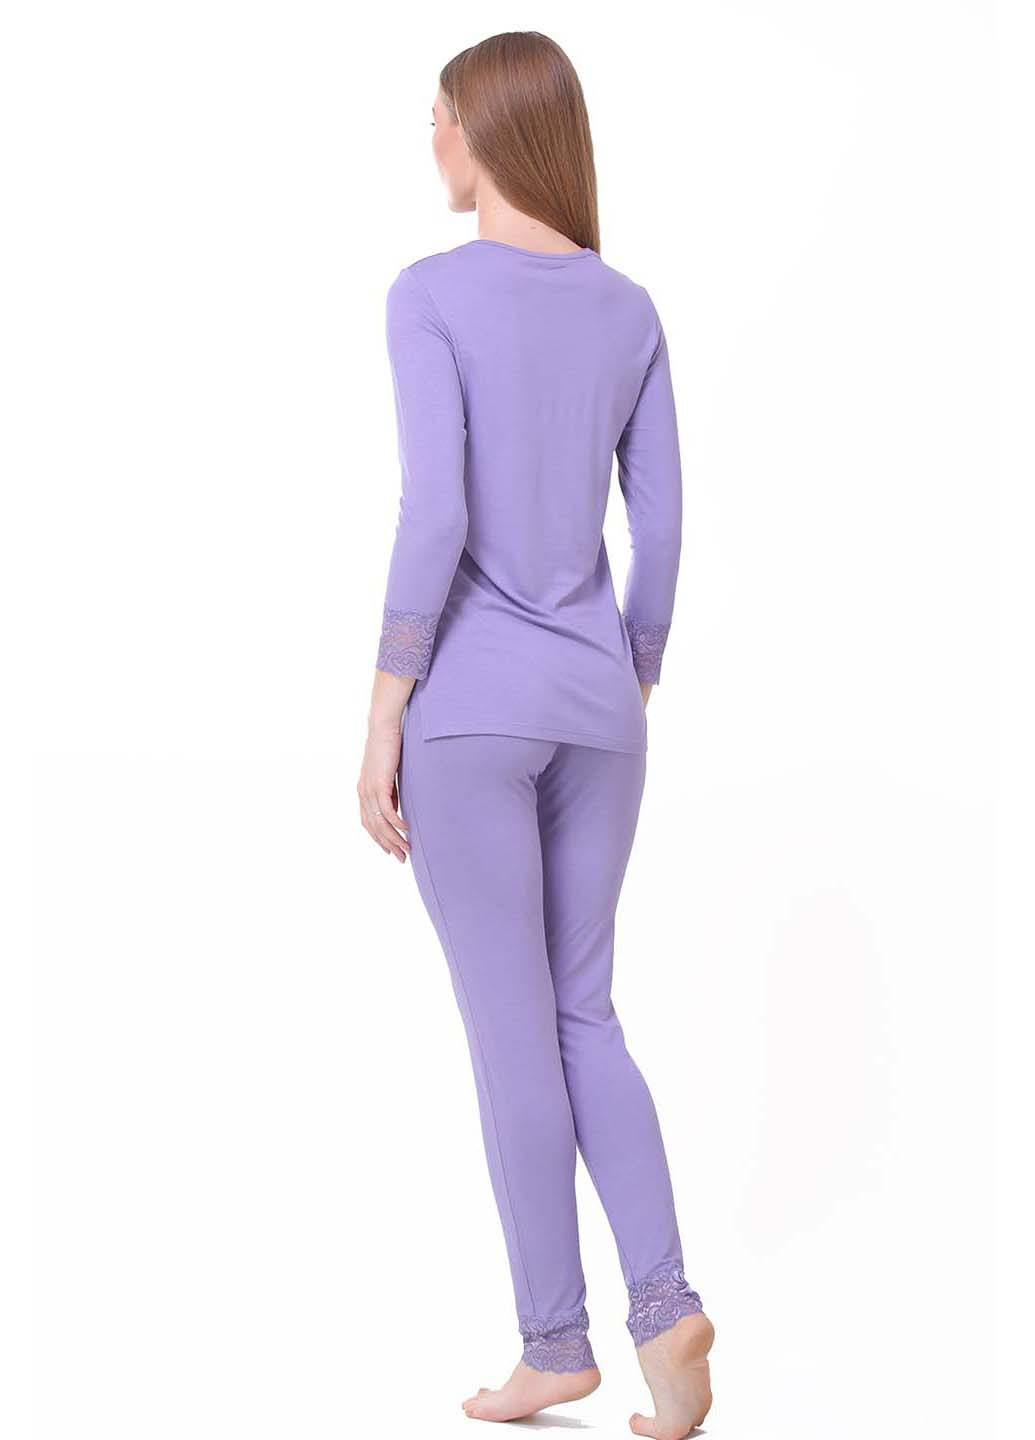 Фиолетовая всесезон пижама Kosta